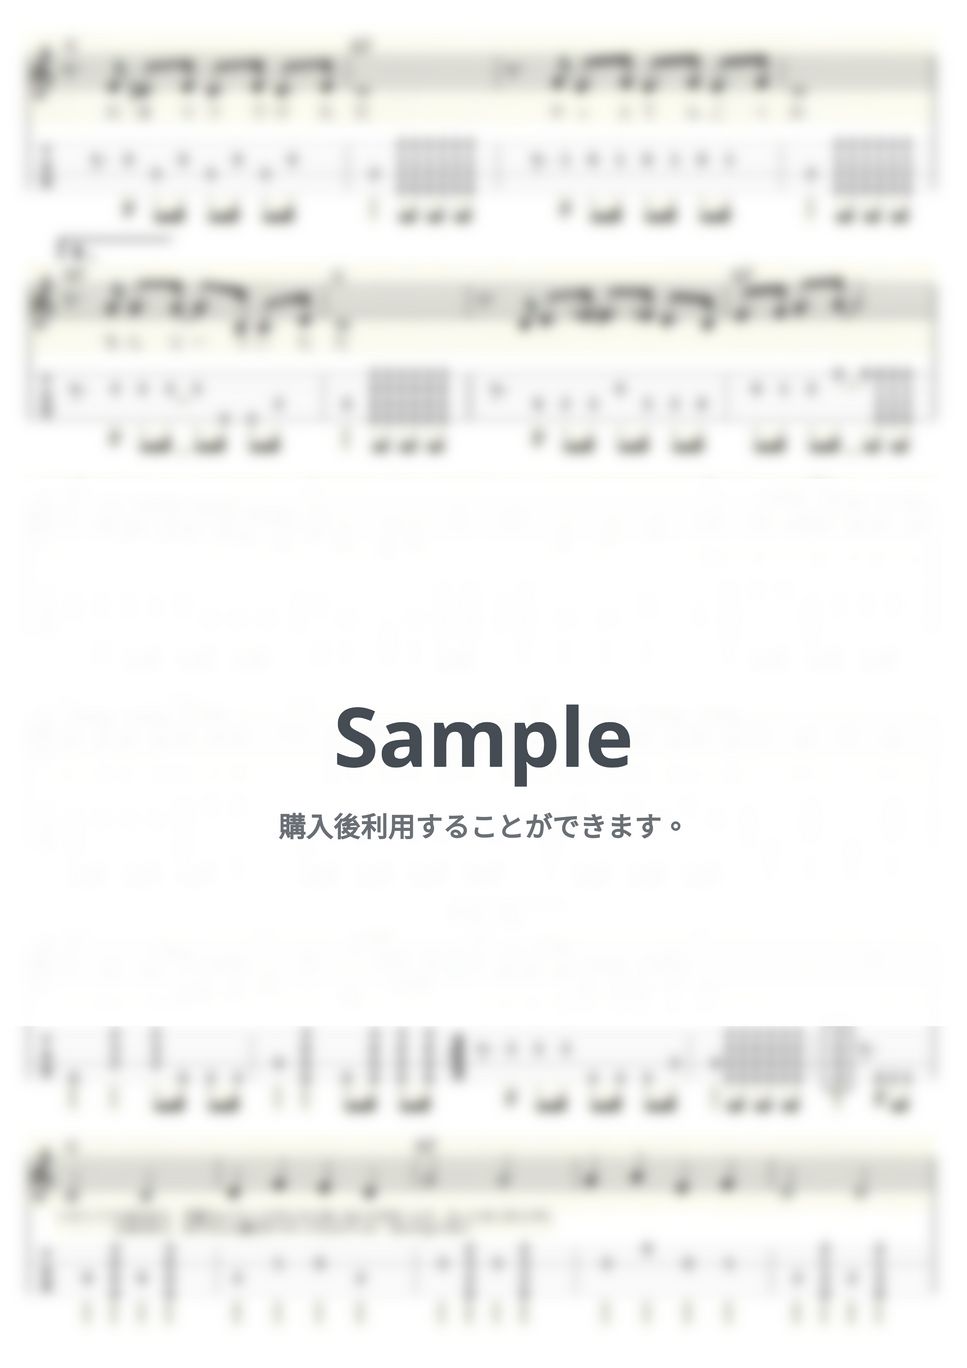 ザ・フォーク・クルセイダーズ - 帰って来たヨッパライ (ｳｸﾚﾚｿﾛ/Low-G/中級) by ukulelepapa